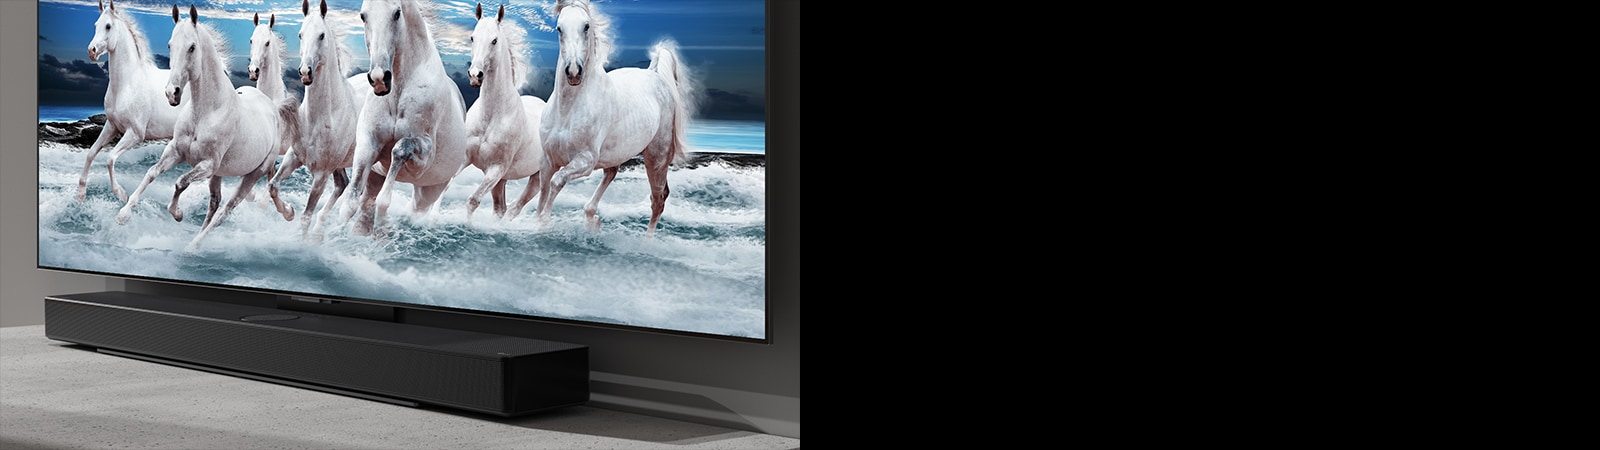 Horizontalusis garsiakalbis („sound bar“) ir televizorius padėti ant balto stalo, o televizoriuje rodomi 7 balti žirgai.